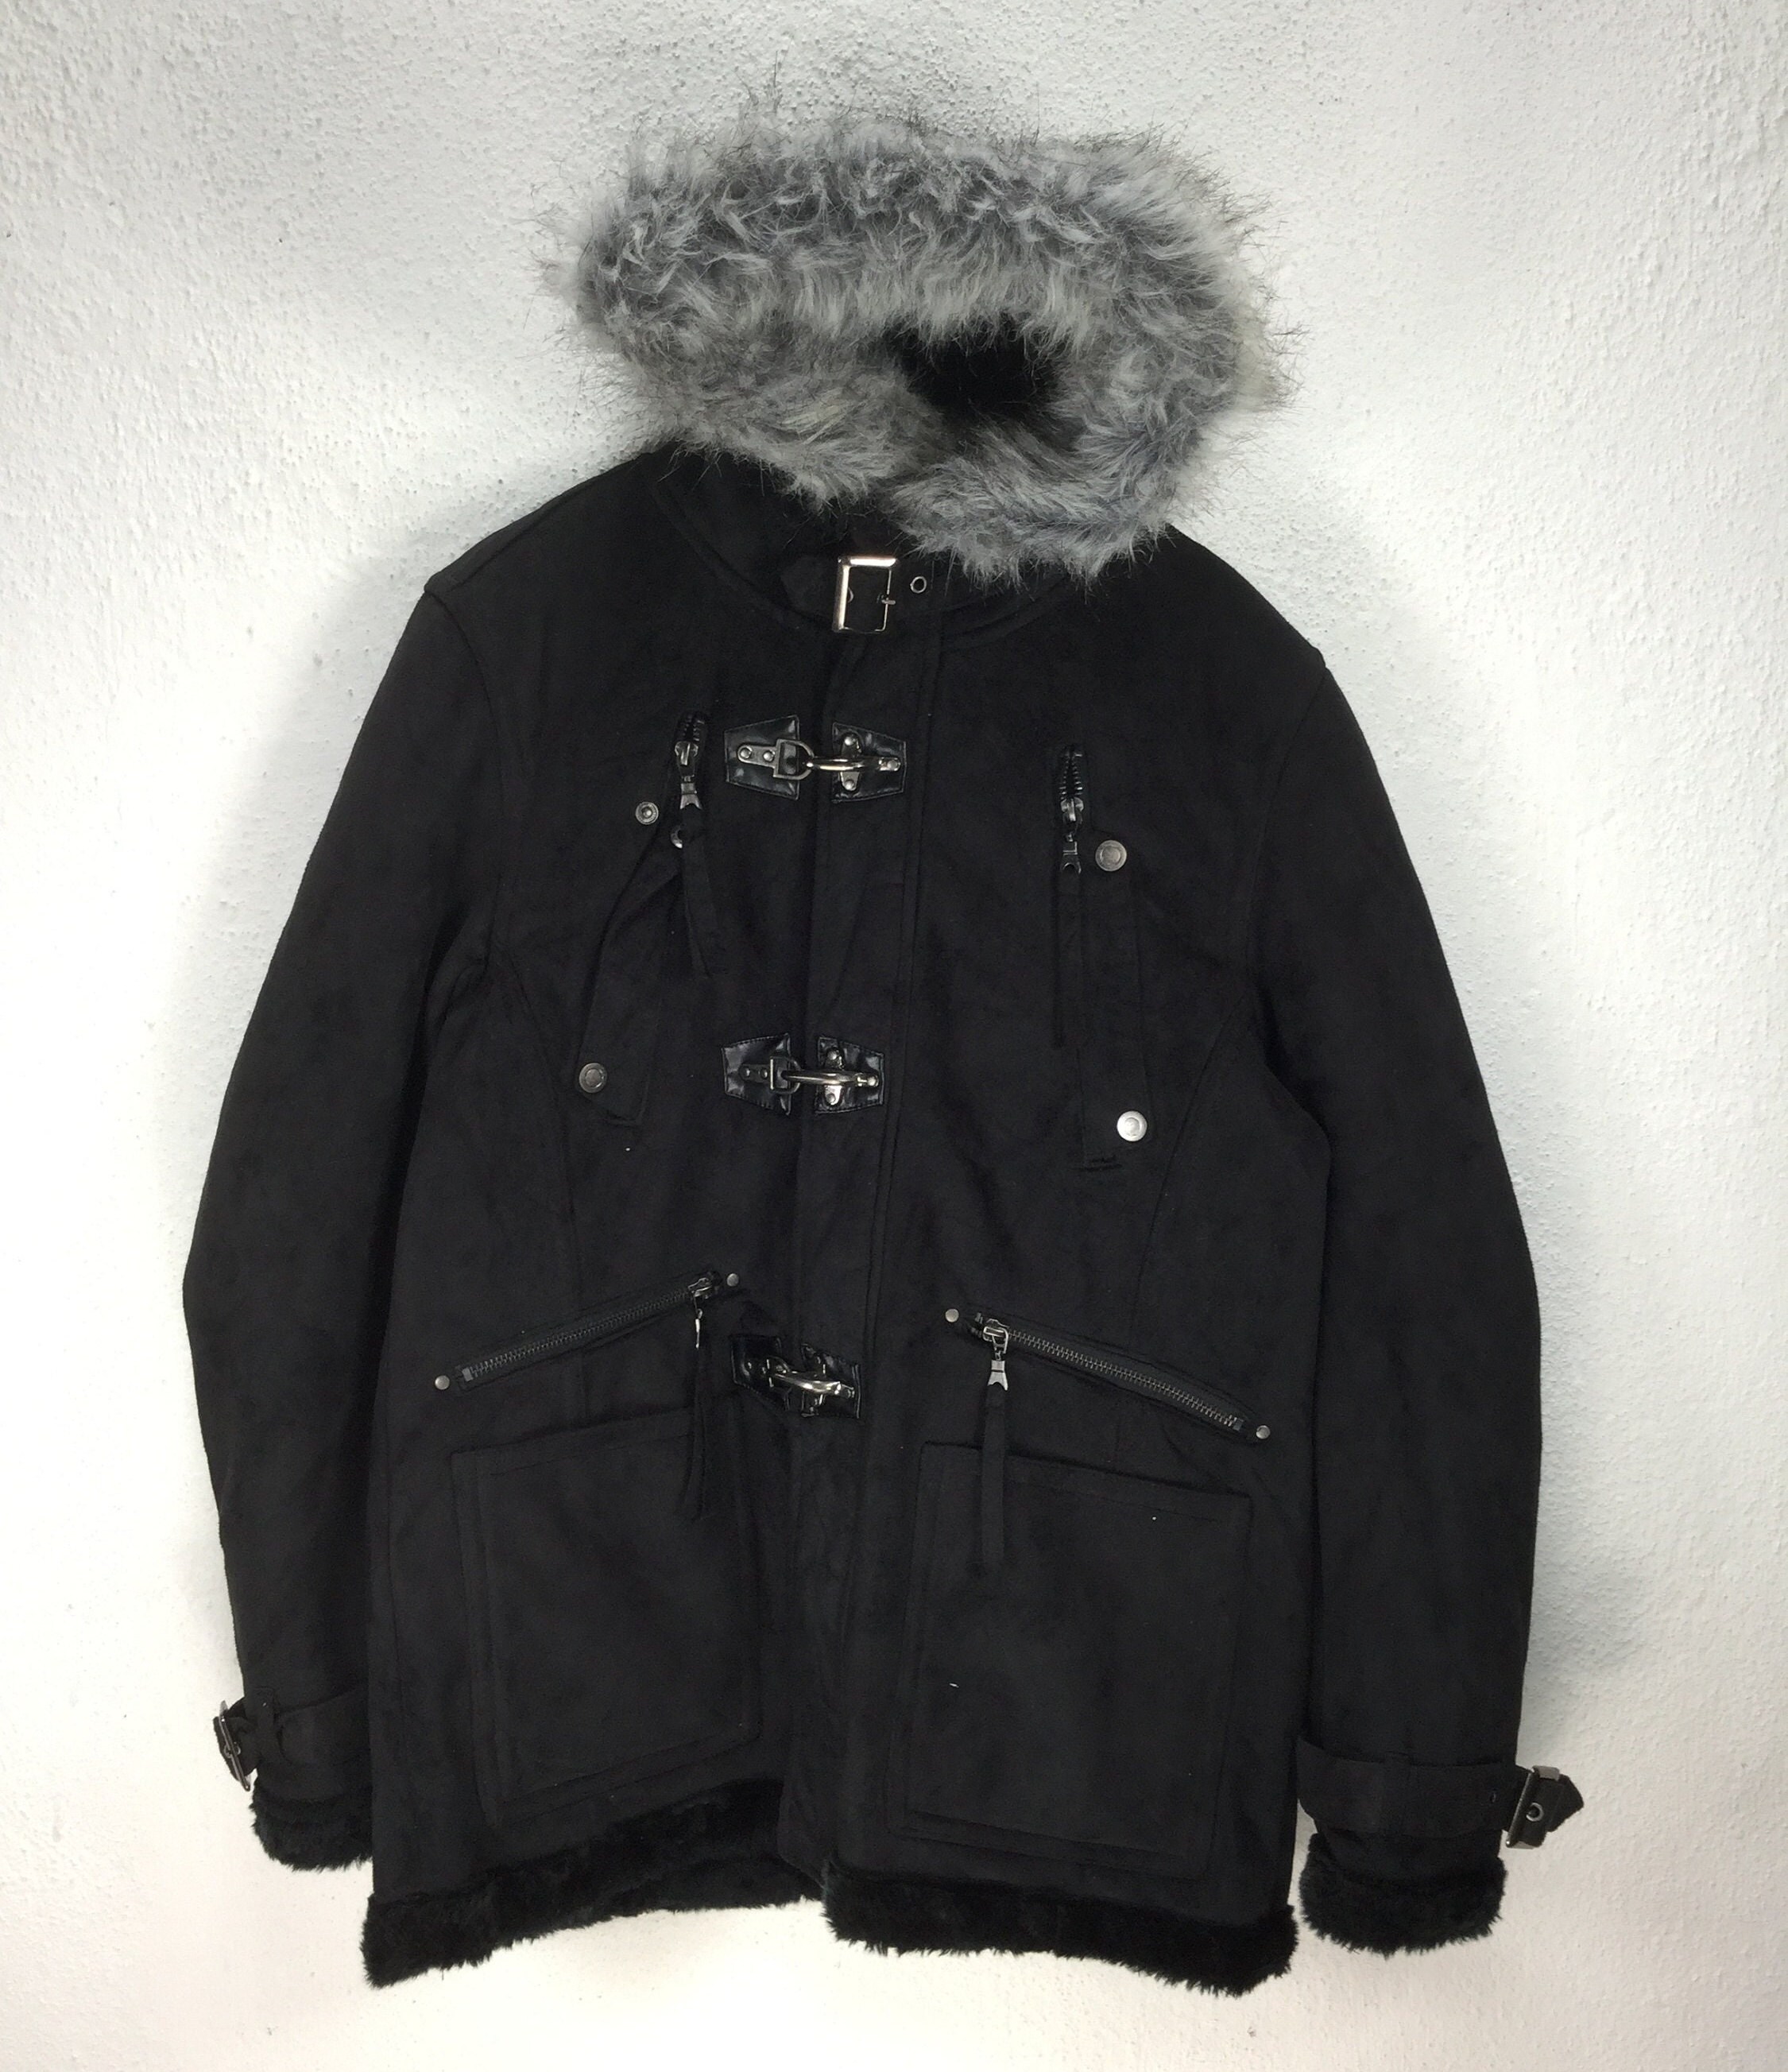 16500円値段アウトレット 在庫あり新品 magliano 19-20aw eskimo coat